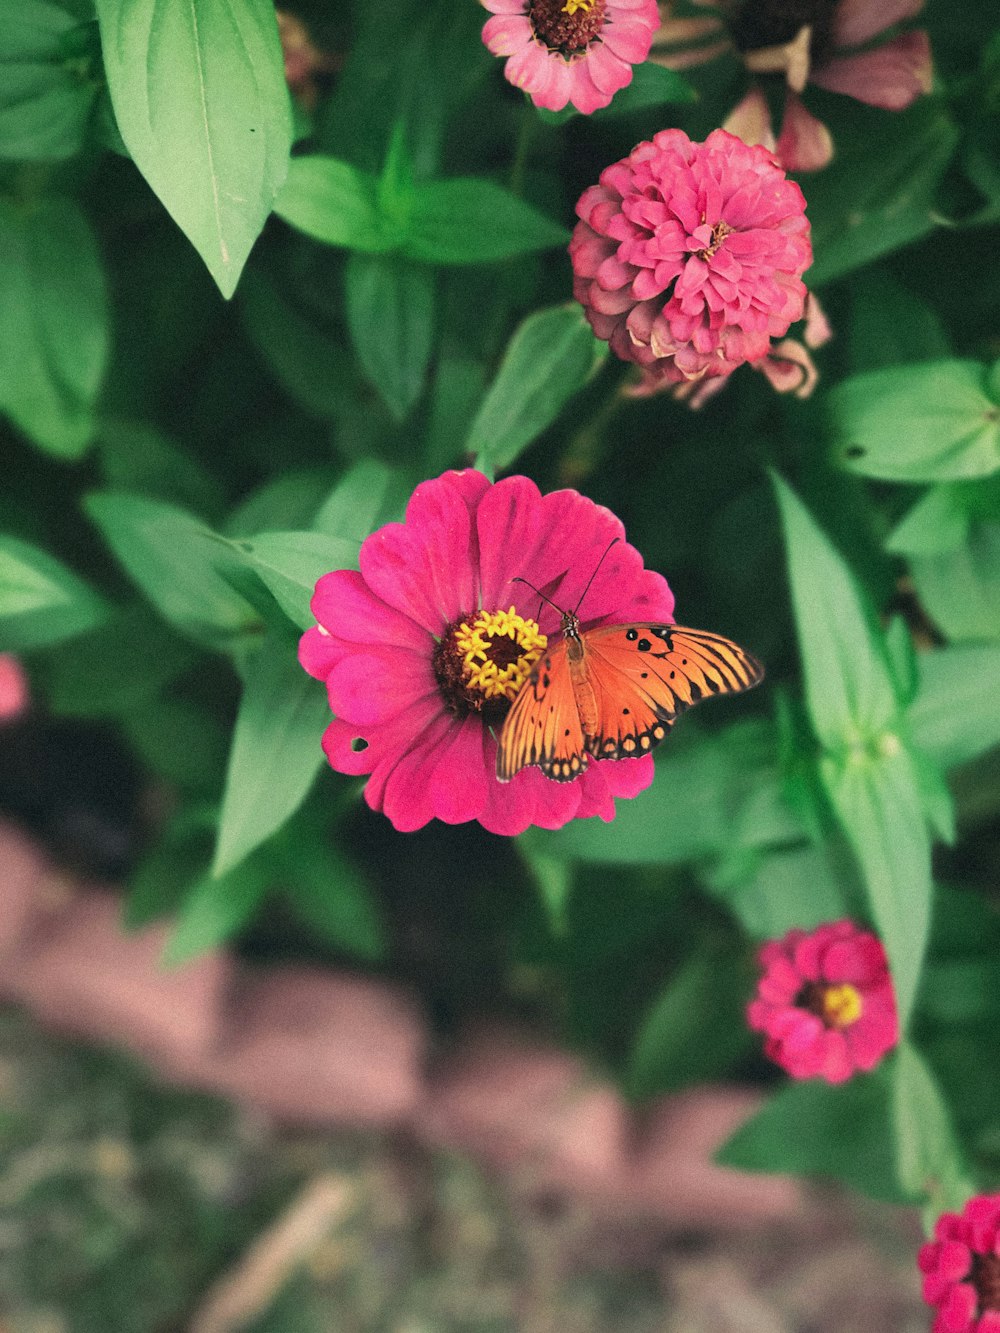 Fotografia de foco raso da borboleta laranja na flor rosa